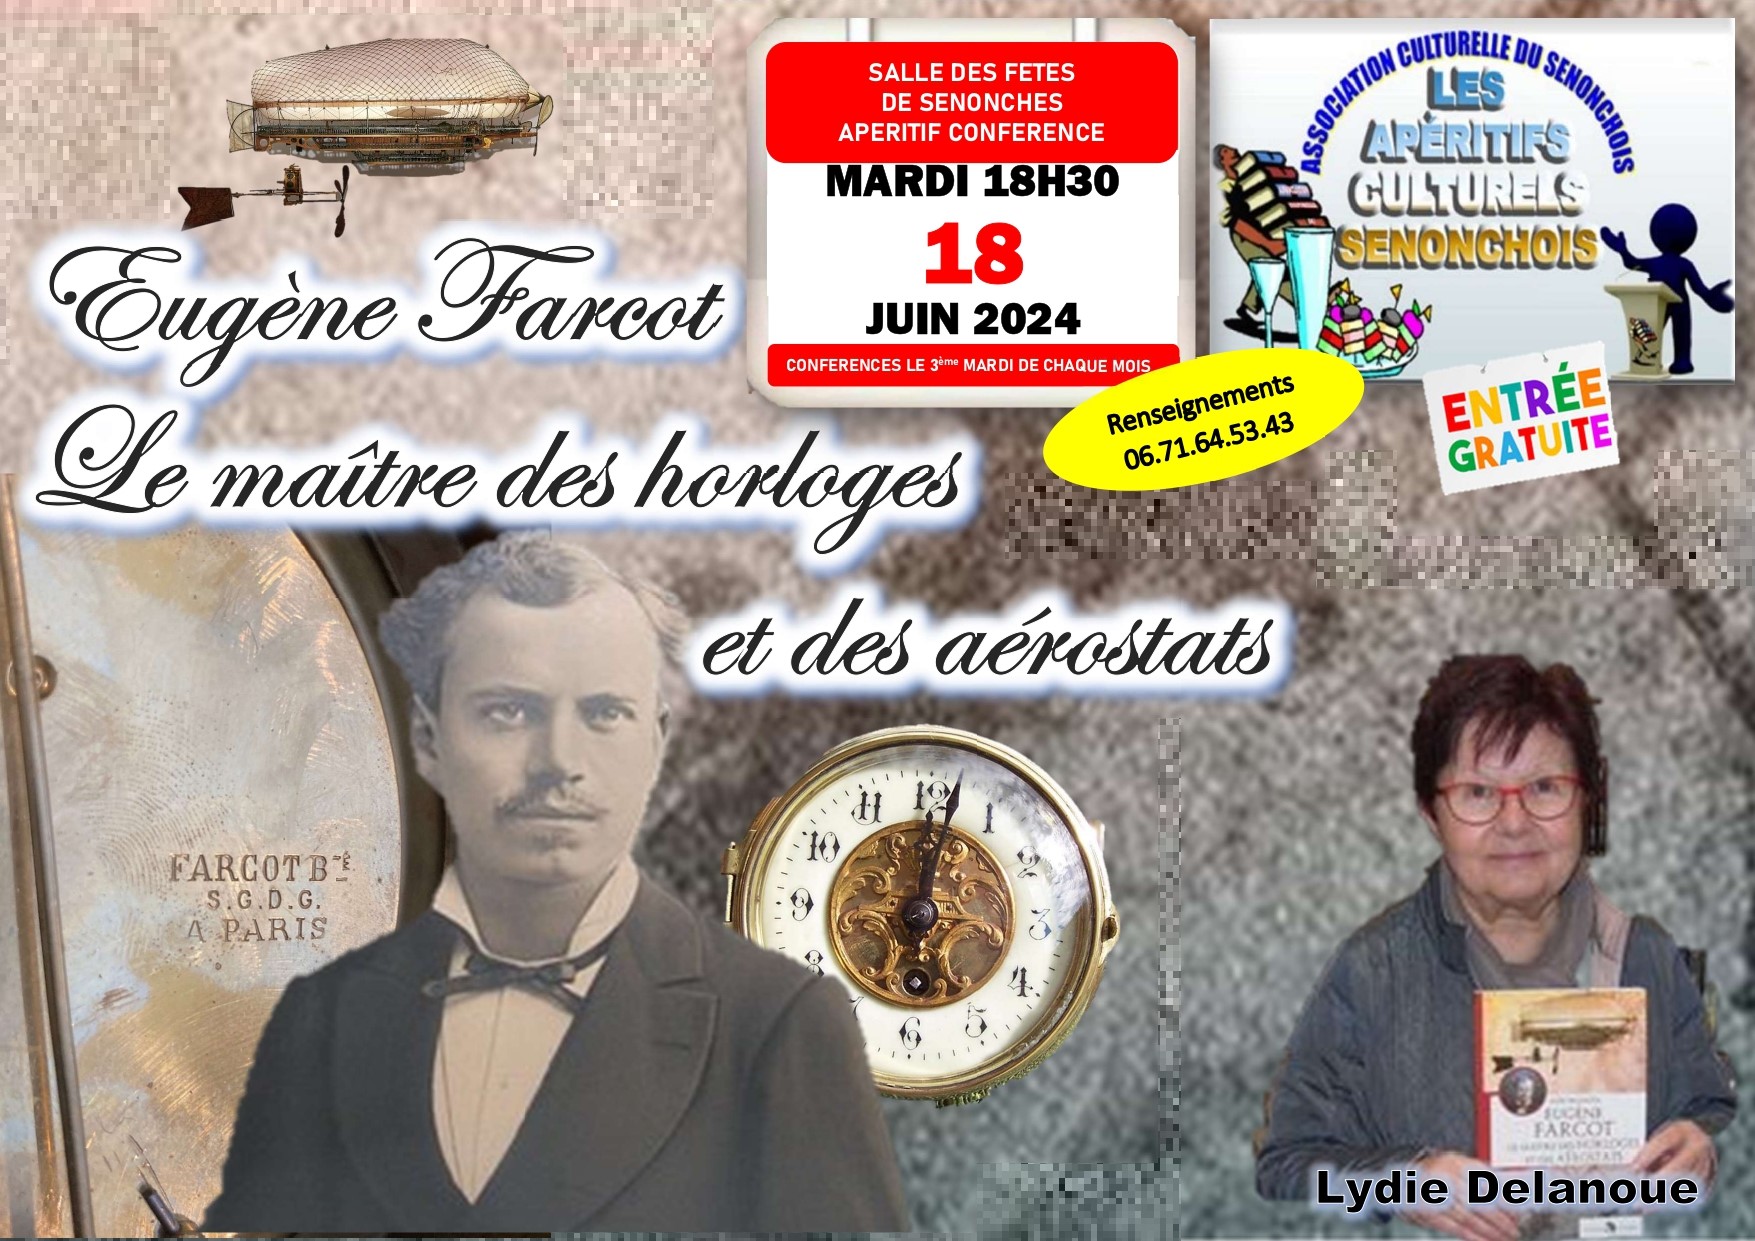 Apéritif conférence Eugène Farcot le maître des horloges et des aérostats